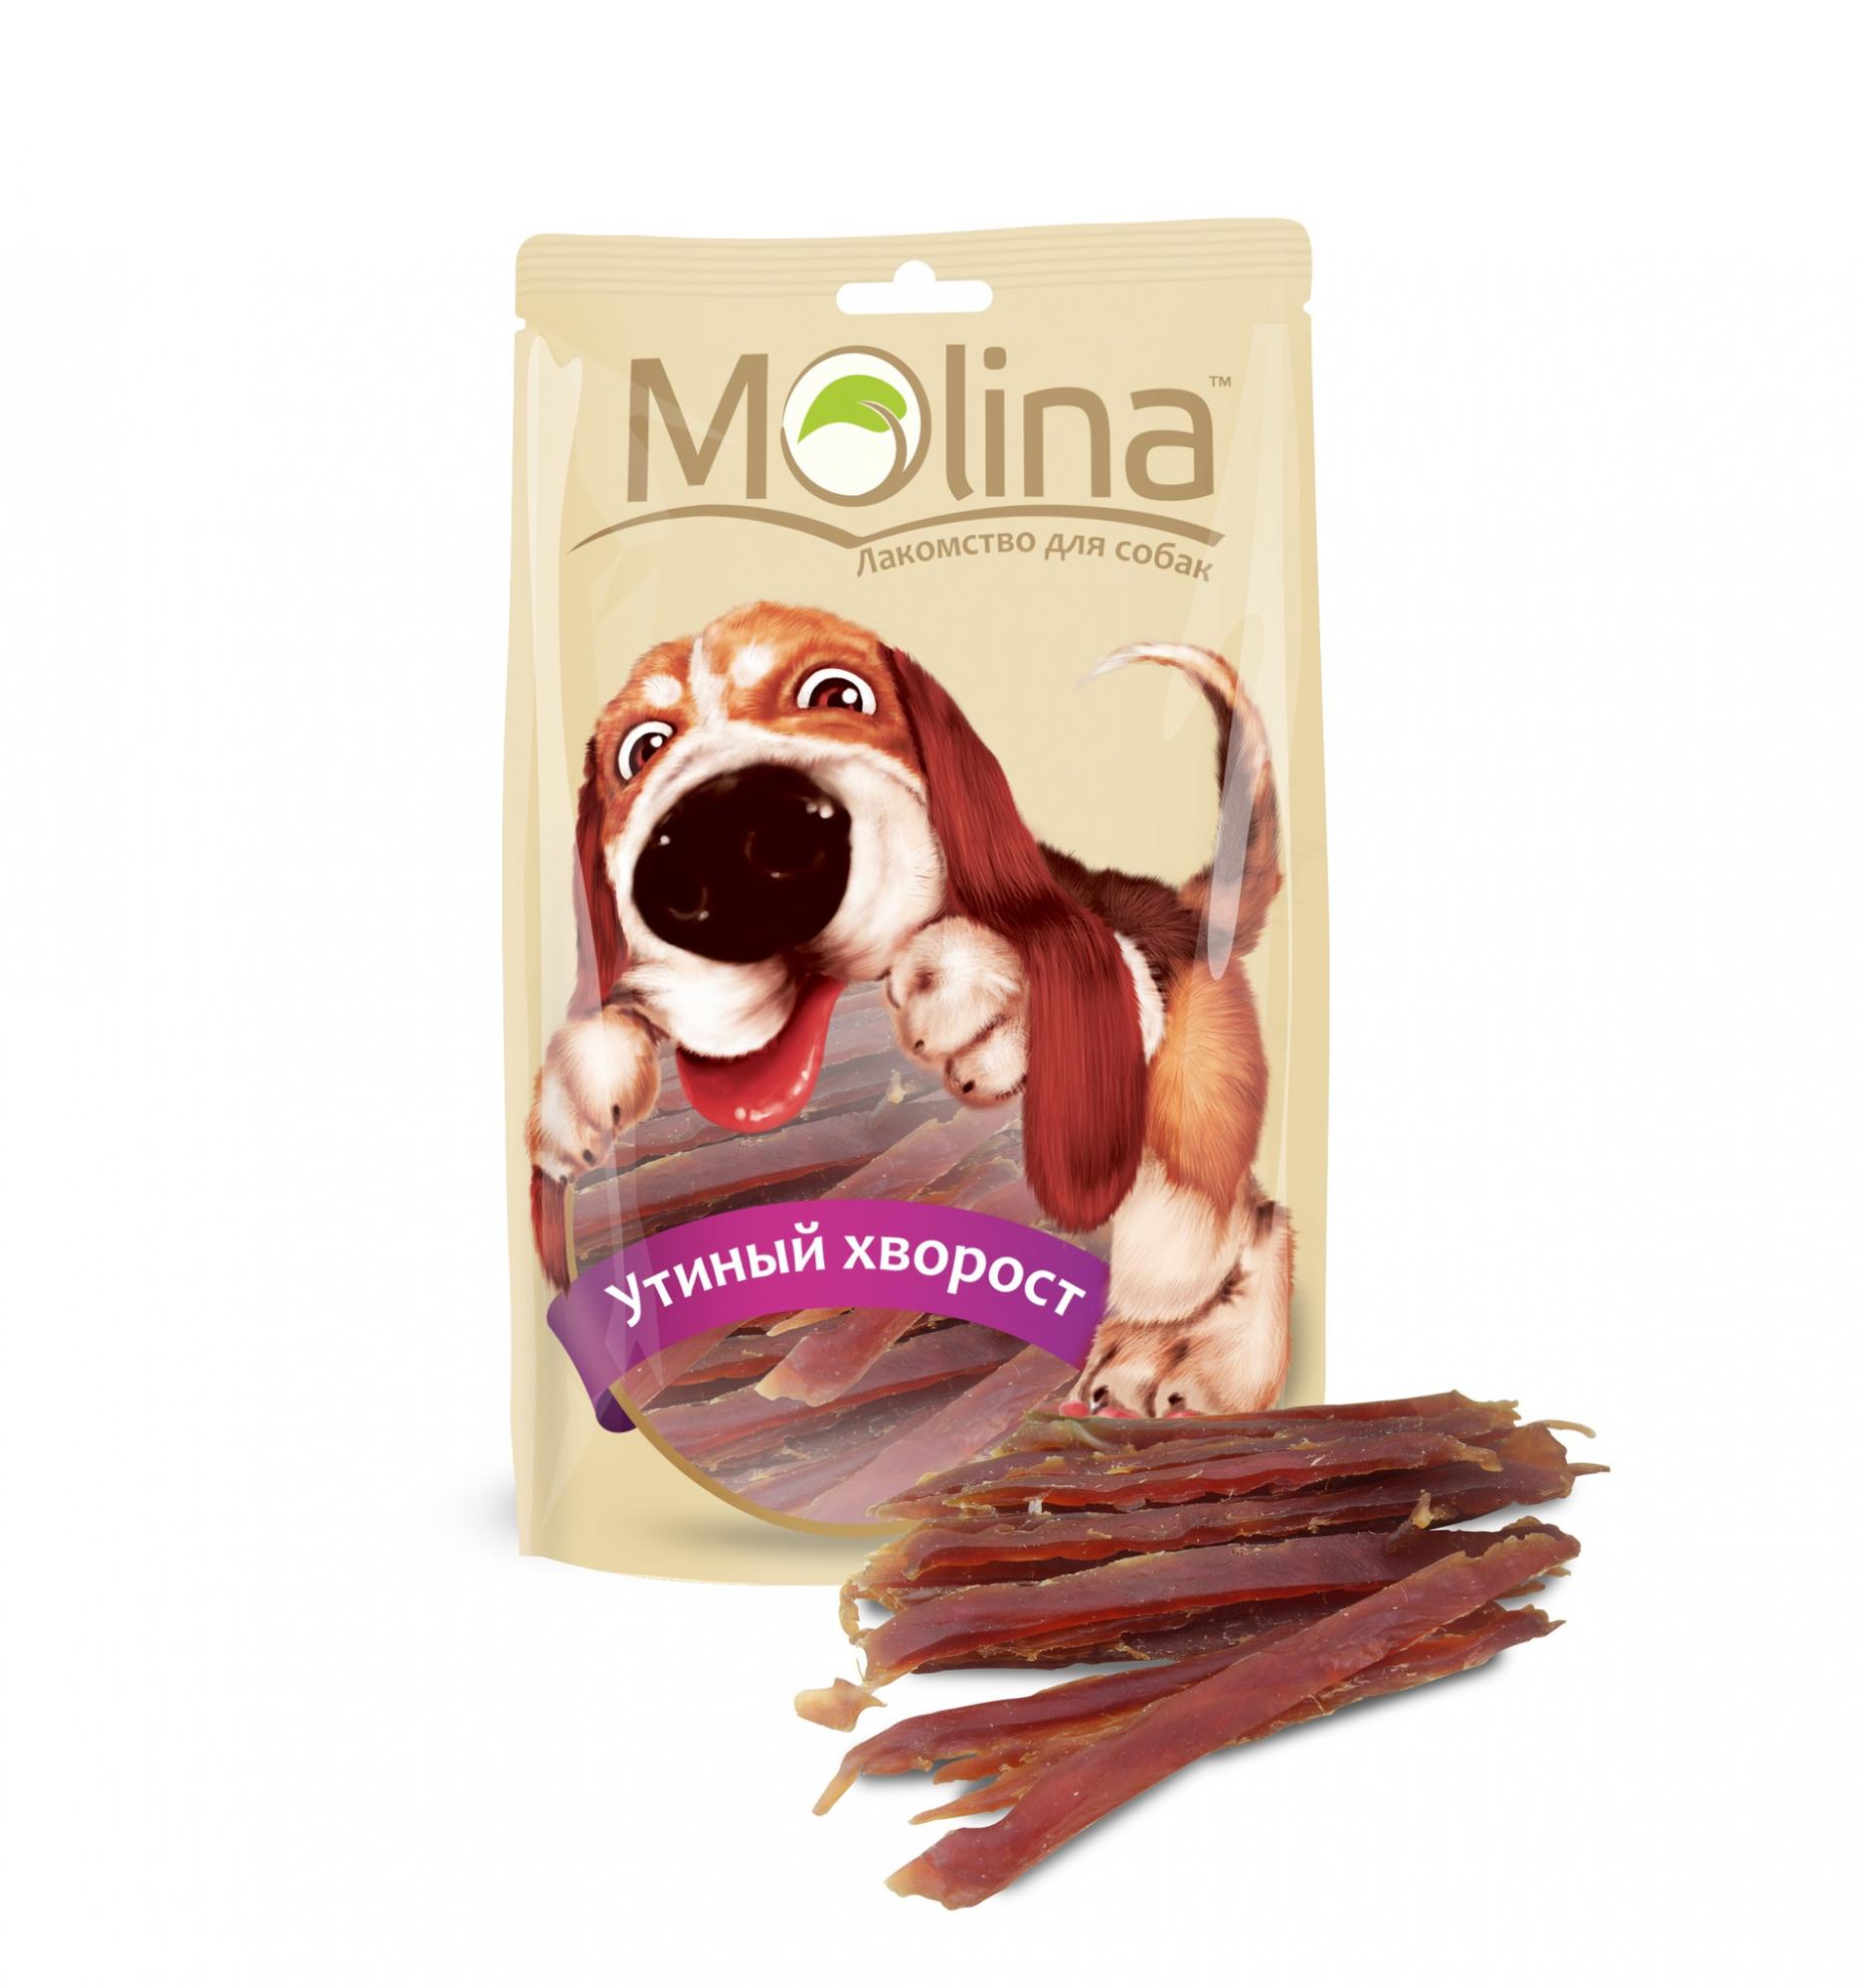 Молина 80гр - Утиный хворост, лакомство для собак (Molina)